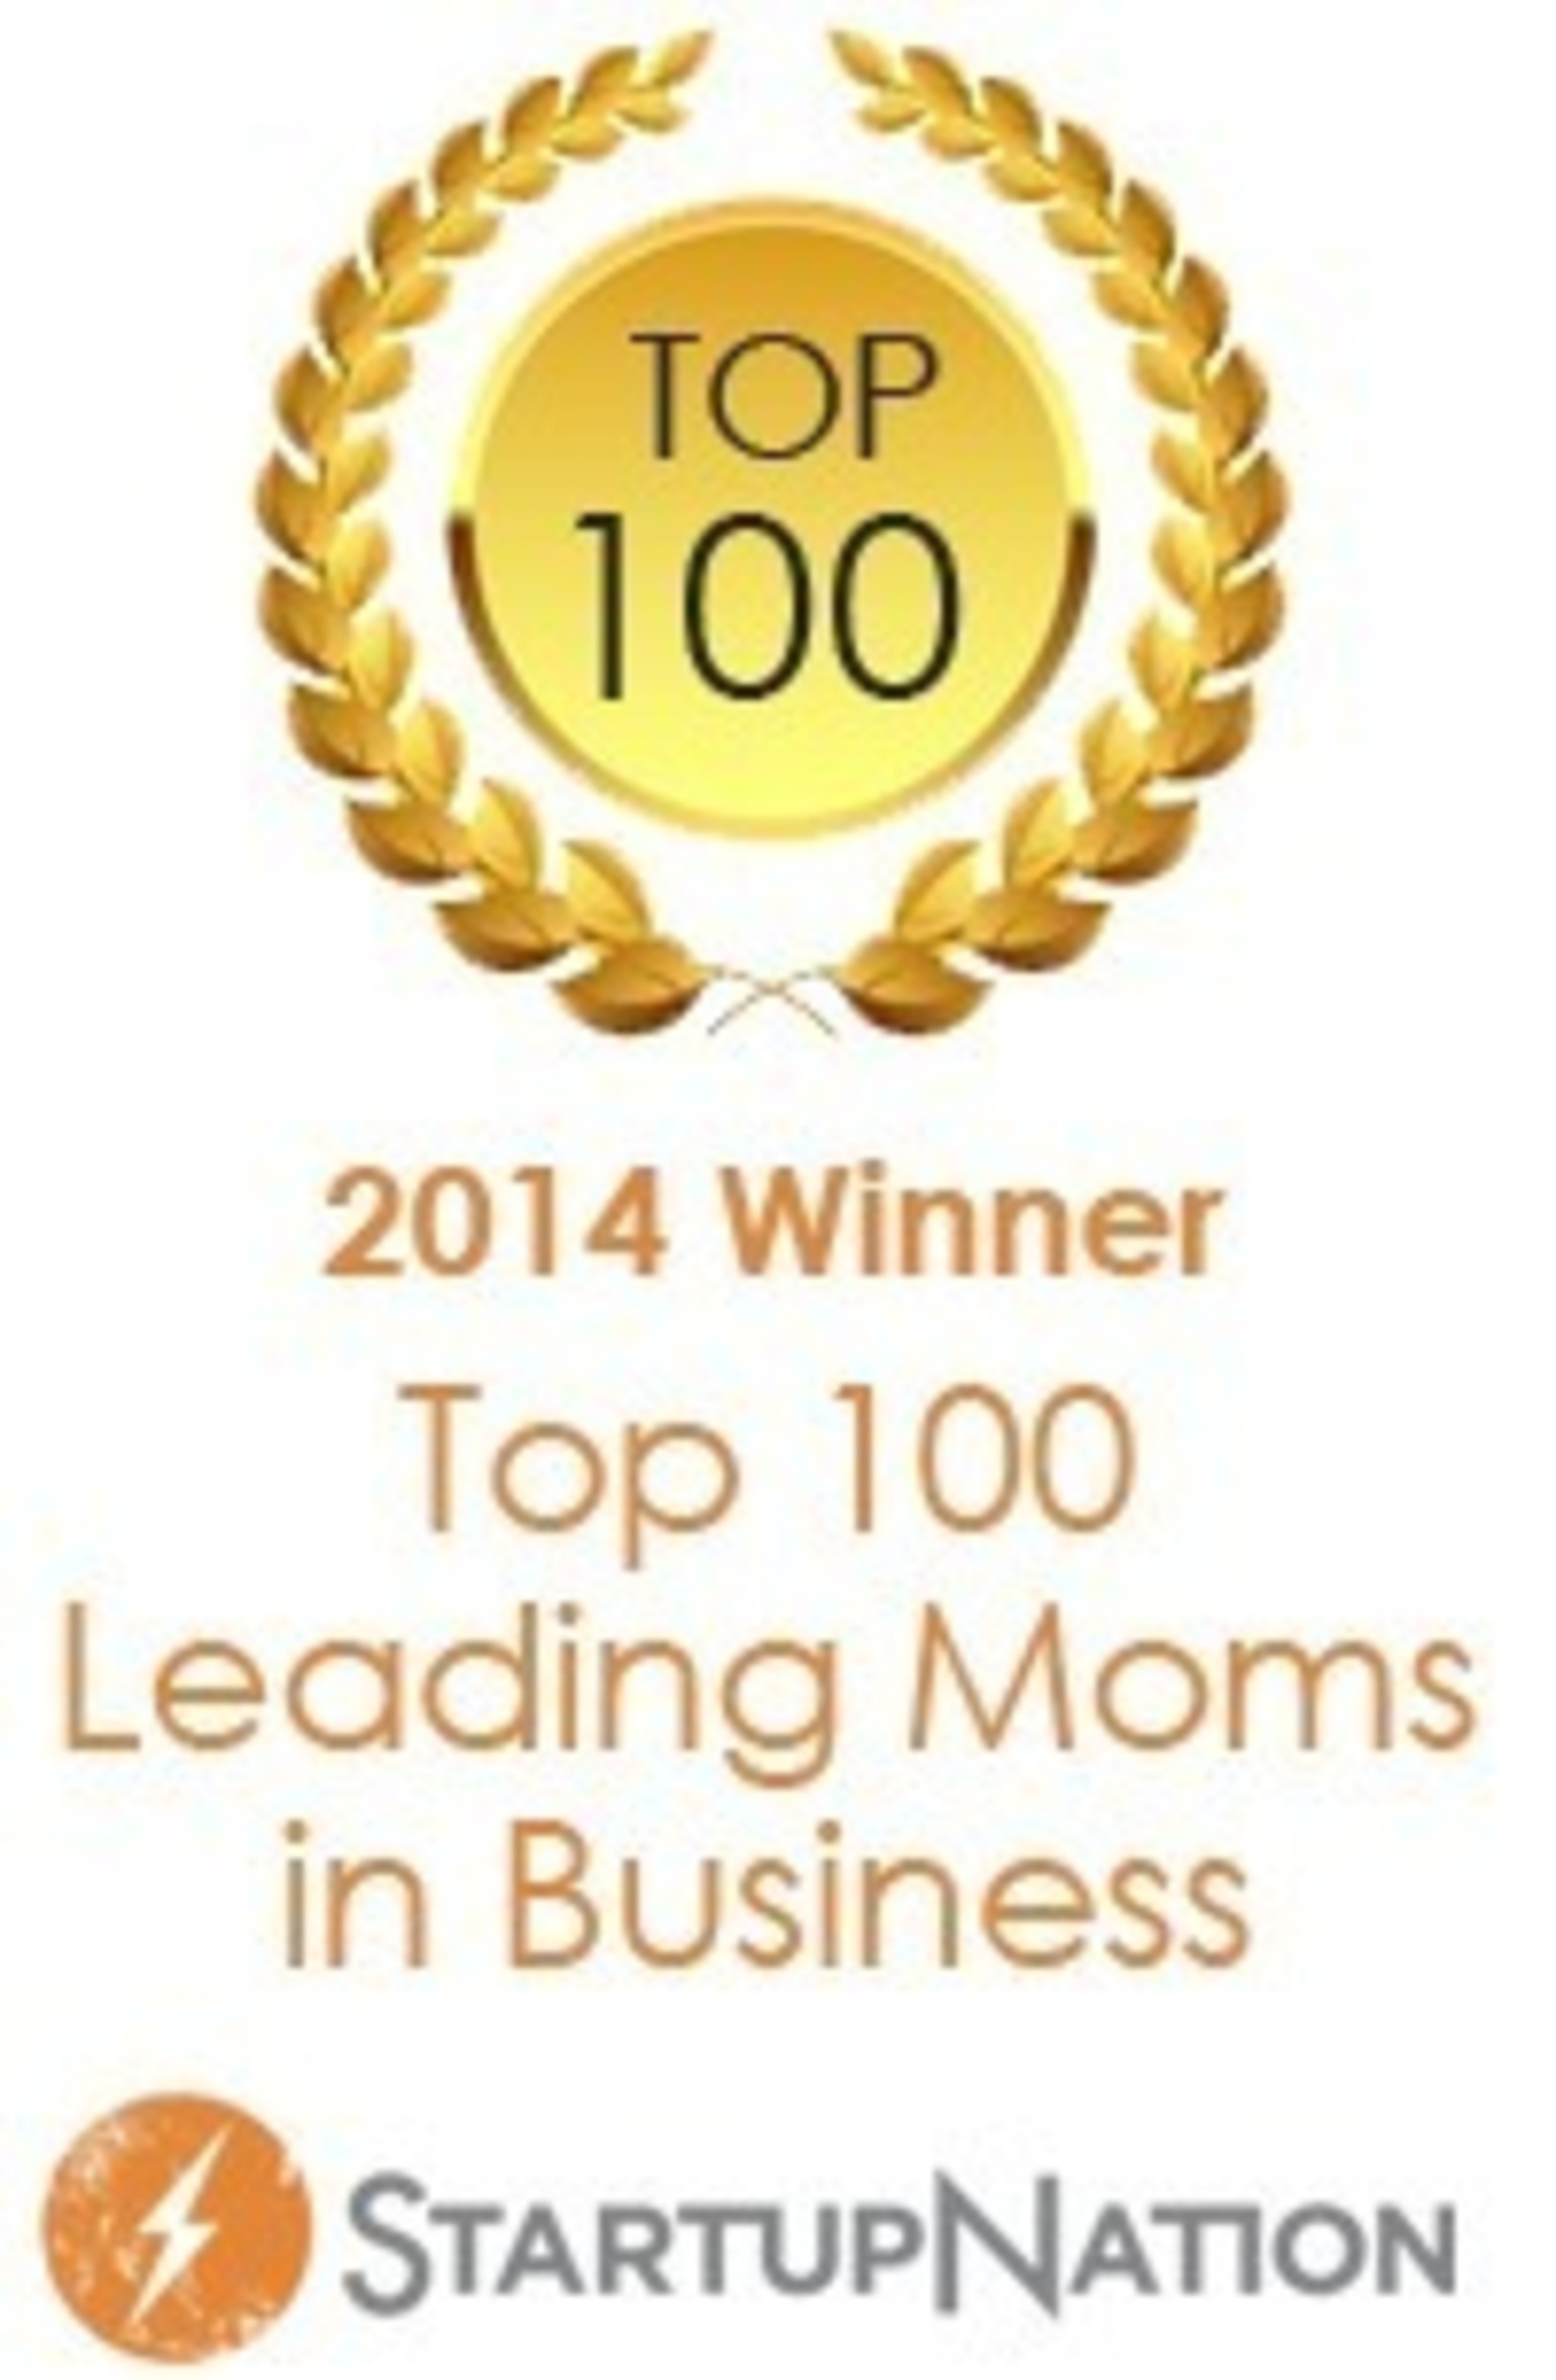 Top 100 Moms in Business (PRNewsFoto/Heather Sonnenberg)